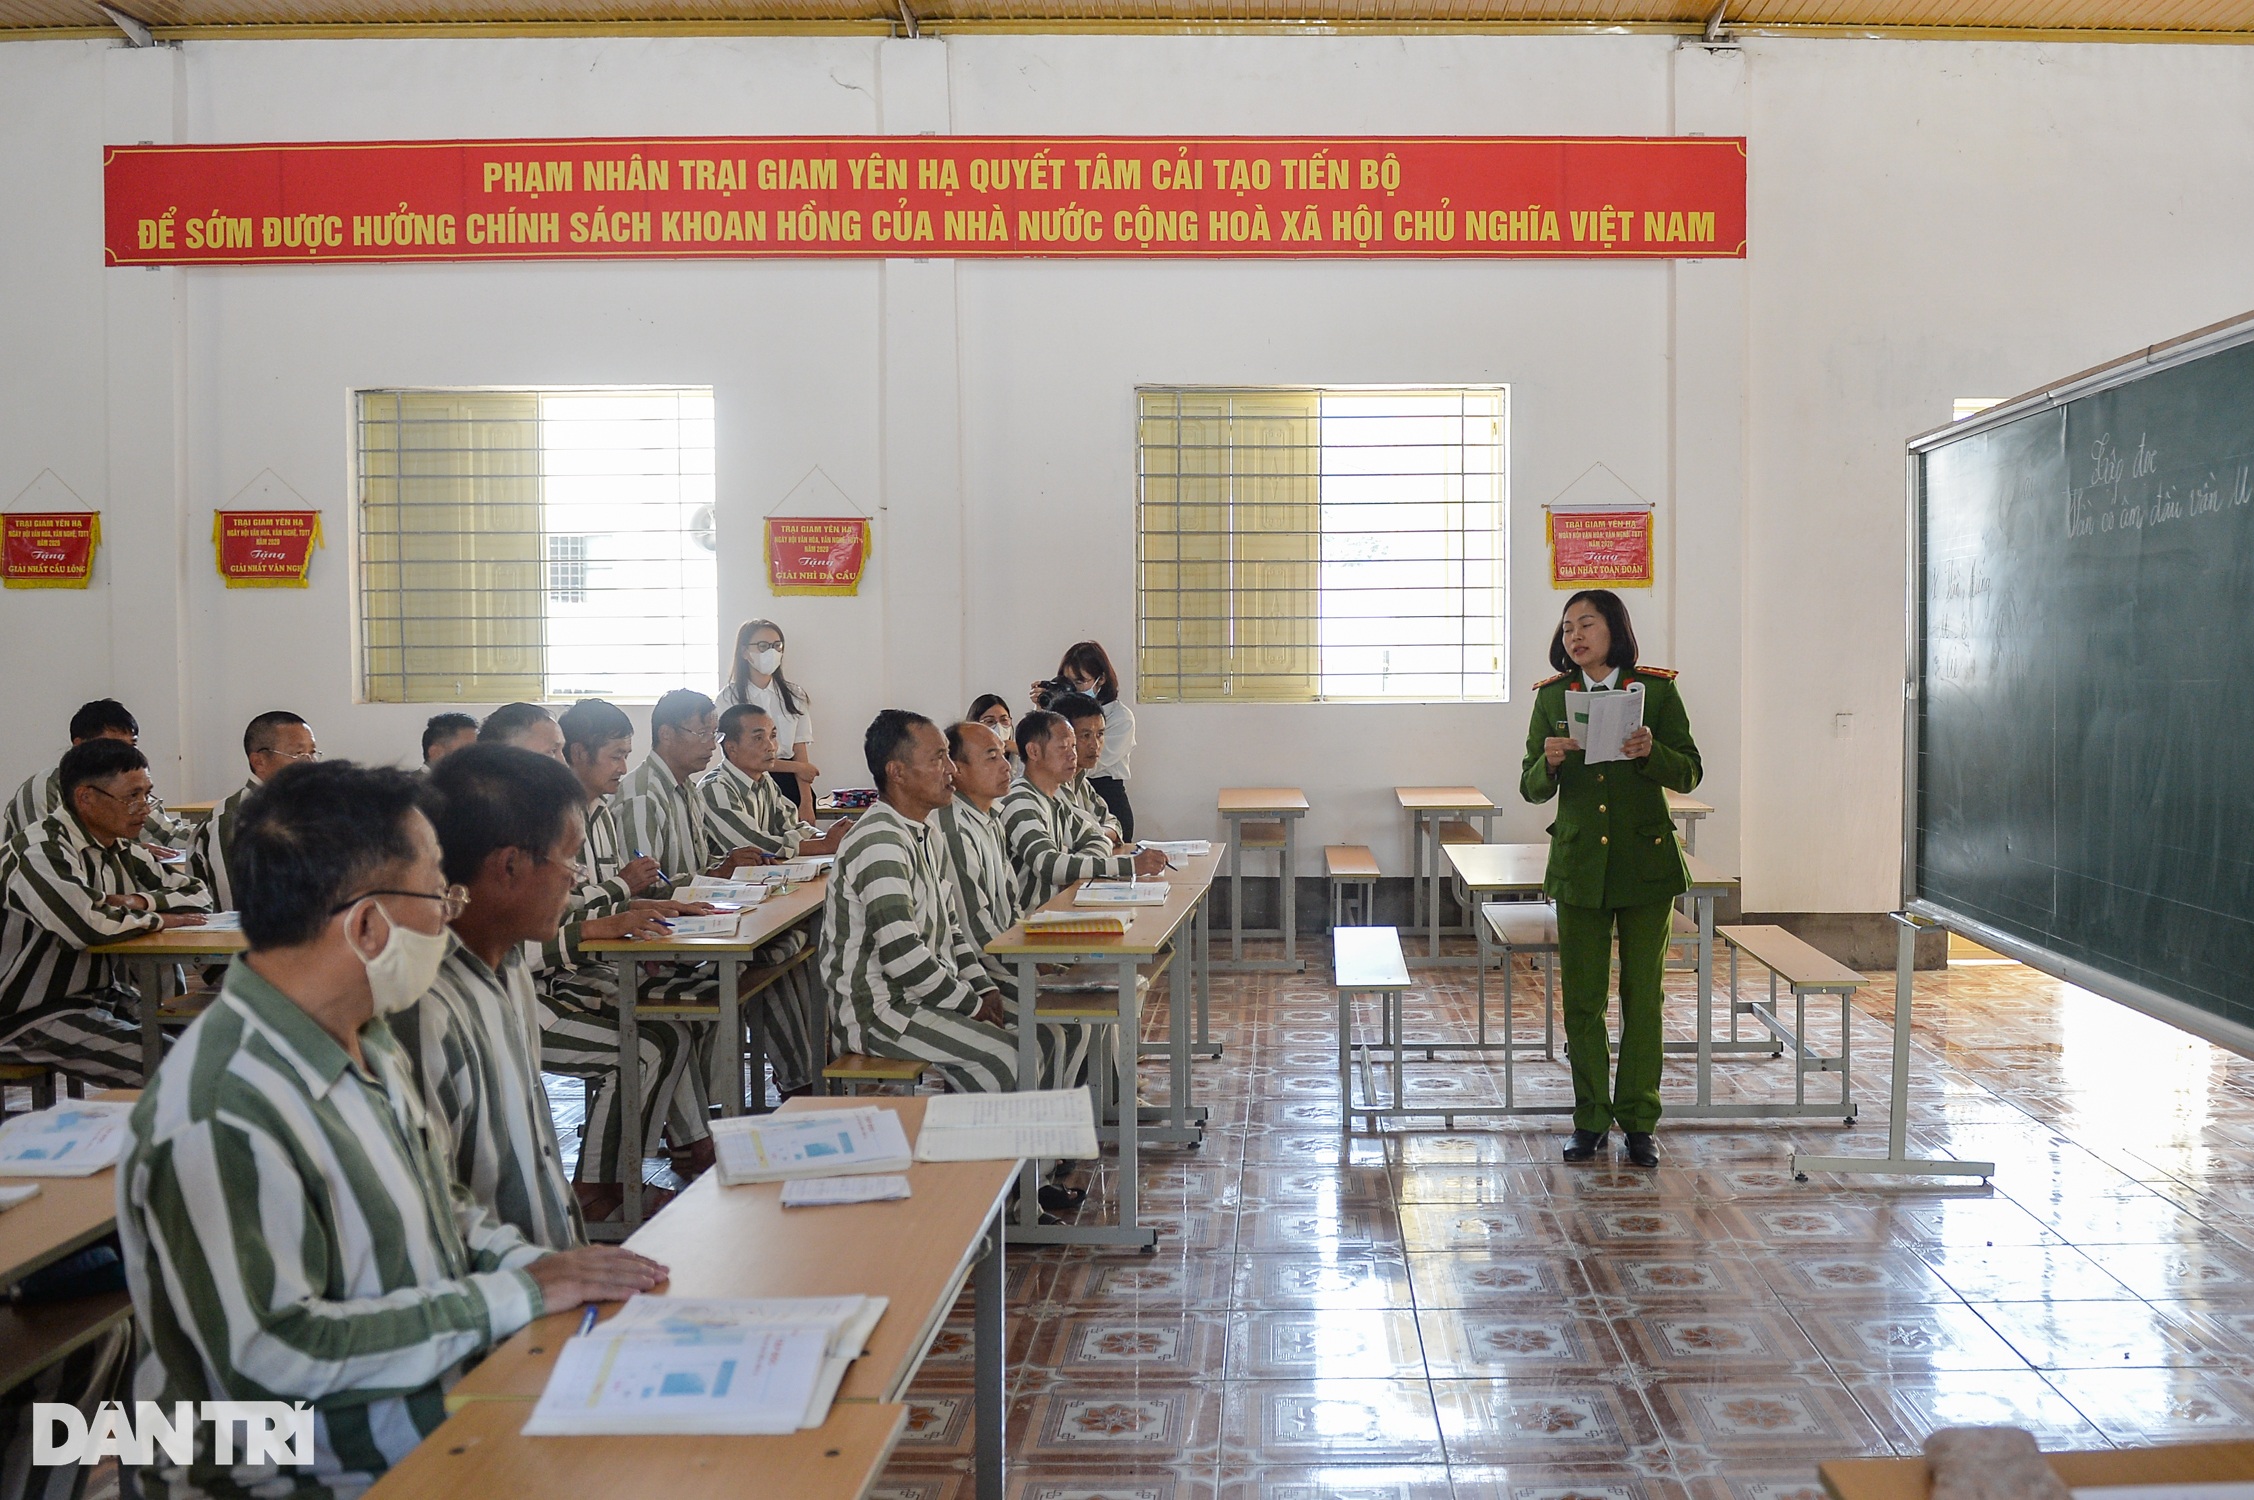 Những câu chuyện nhân văn ở lớp xóa mù chữ tại Trại giam Yên Hạ - 1